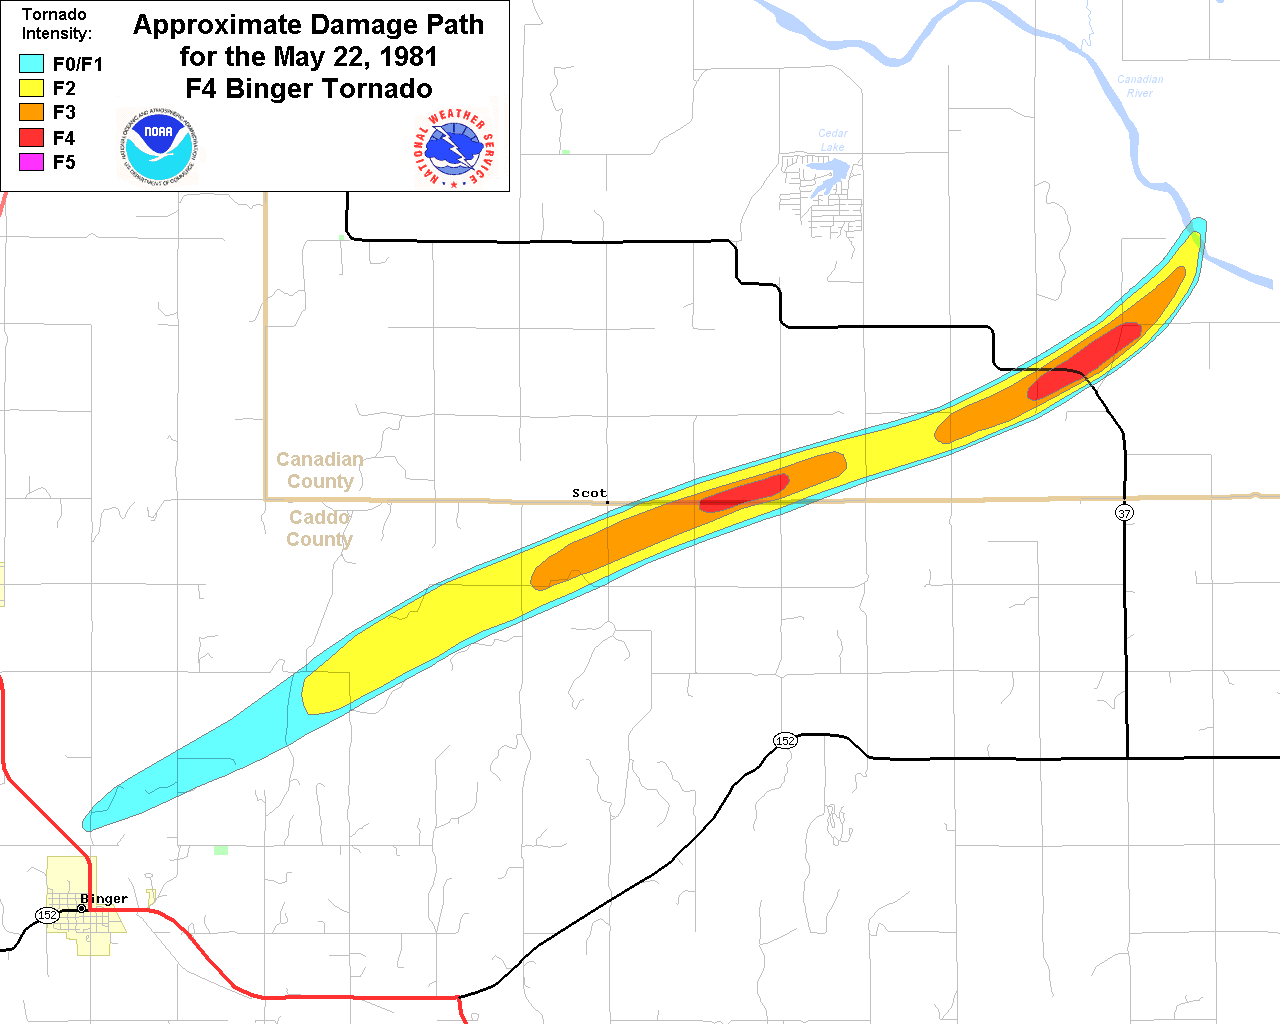 Violent Tornadoes (F4/F5/EF-4/EF-5) in Oklahoma (1950-Present)1280 x 1024